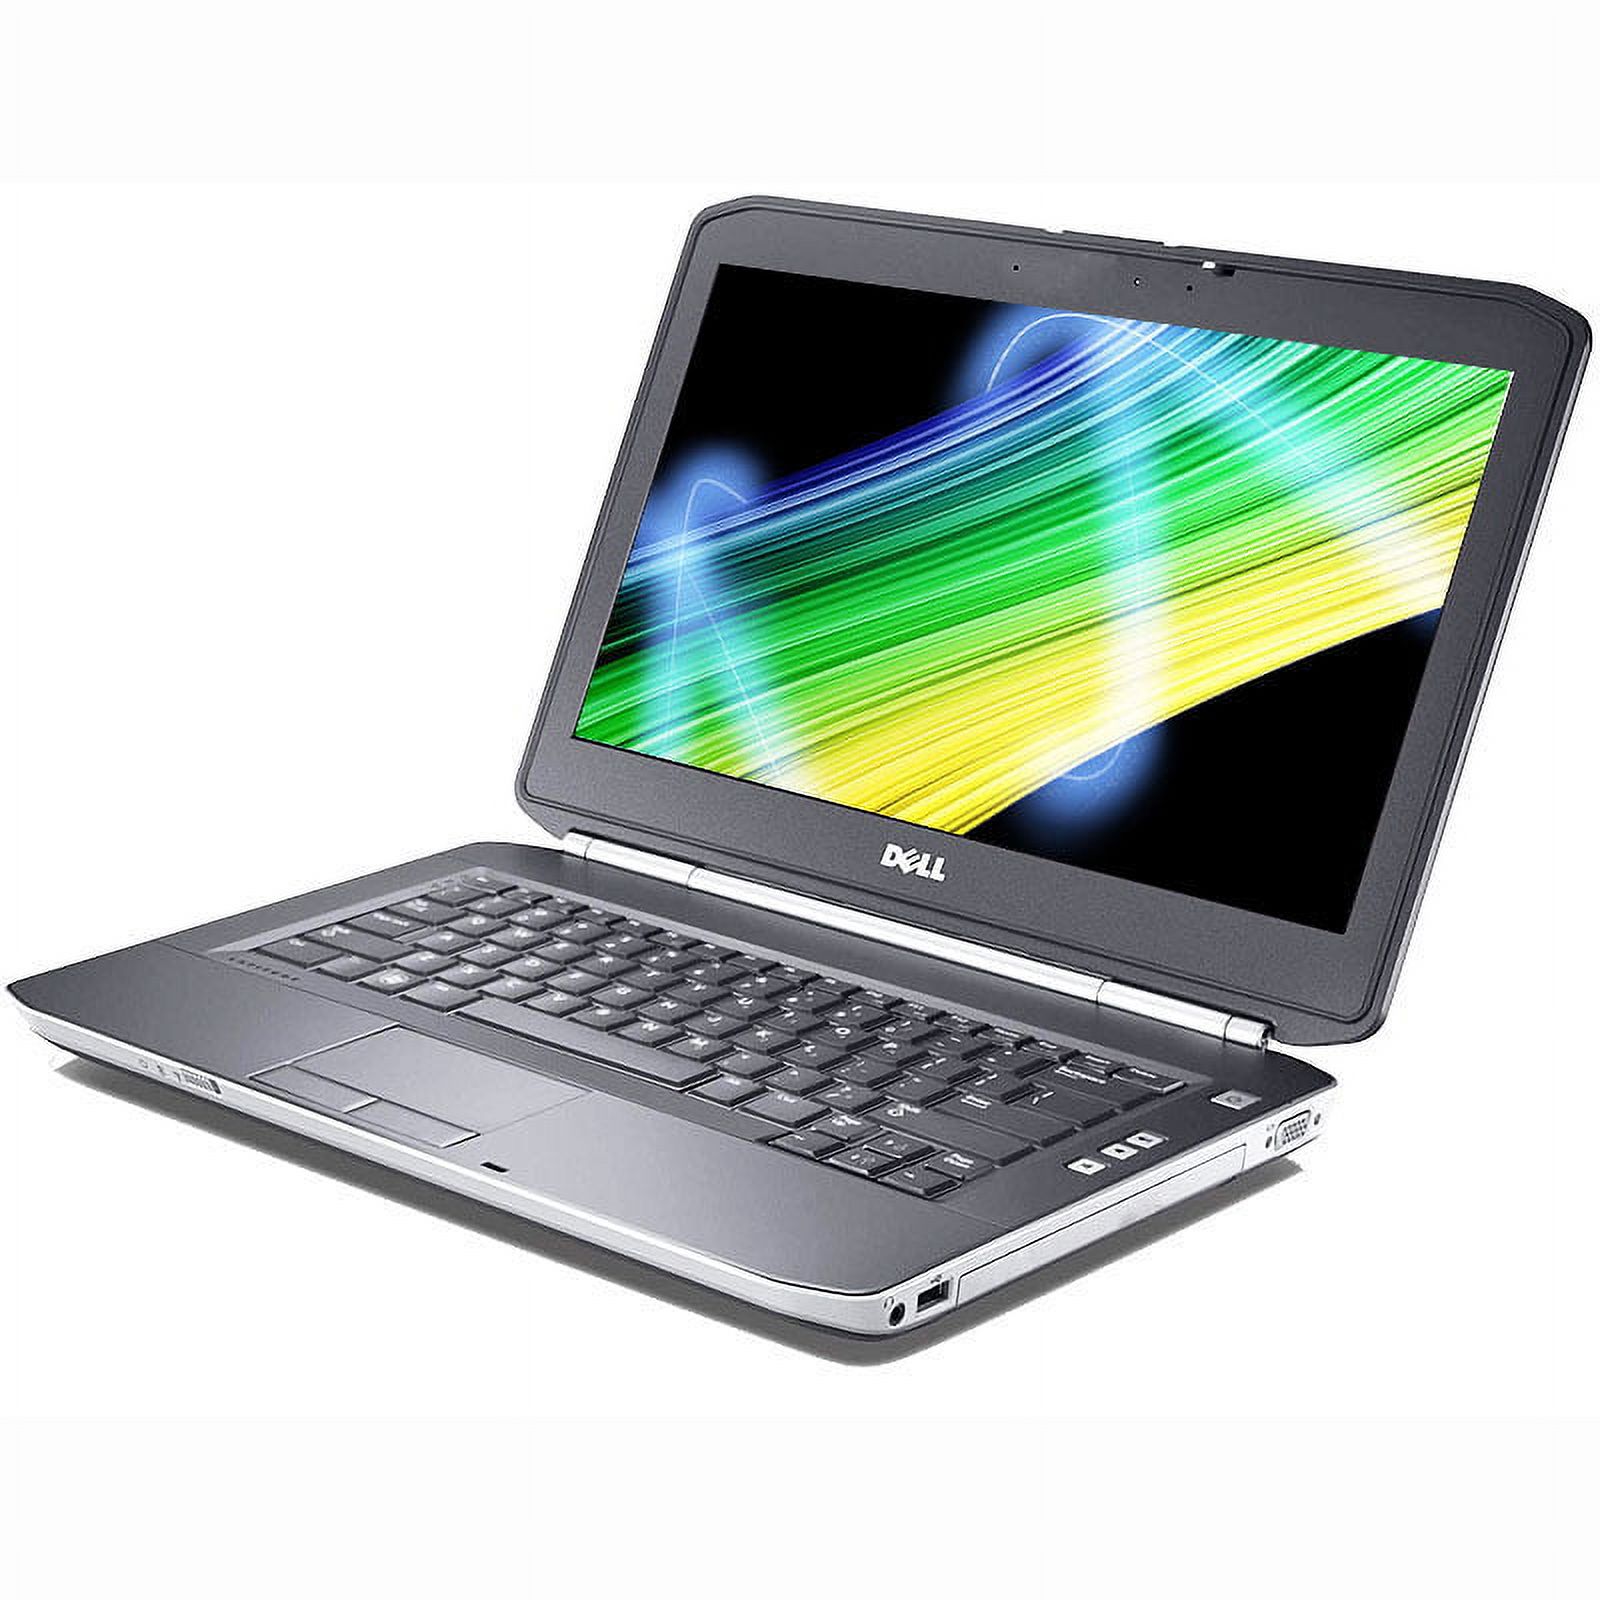 Pre-Owned Dell Latitude E5430 i3 2.4GHz 4GB 320GB DVDRW Win 10 Pro 64 Laptop Computer B - image 2 of 4